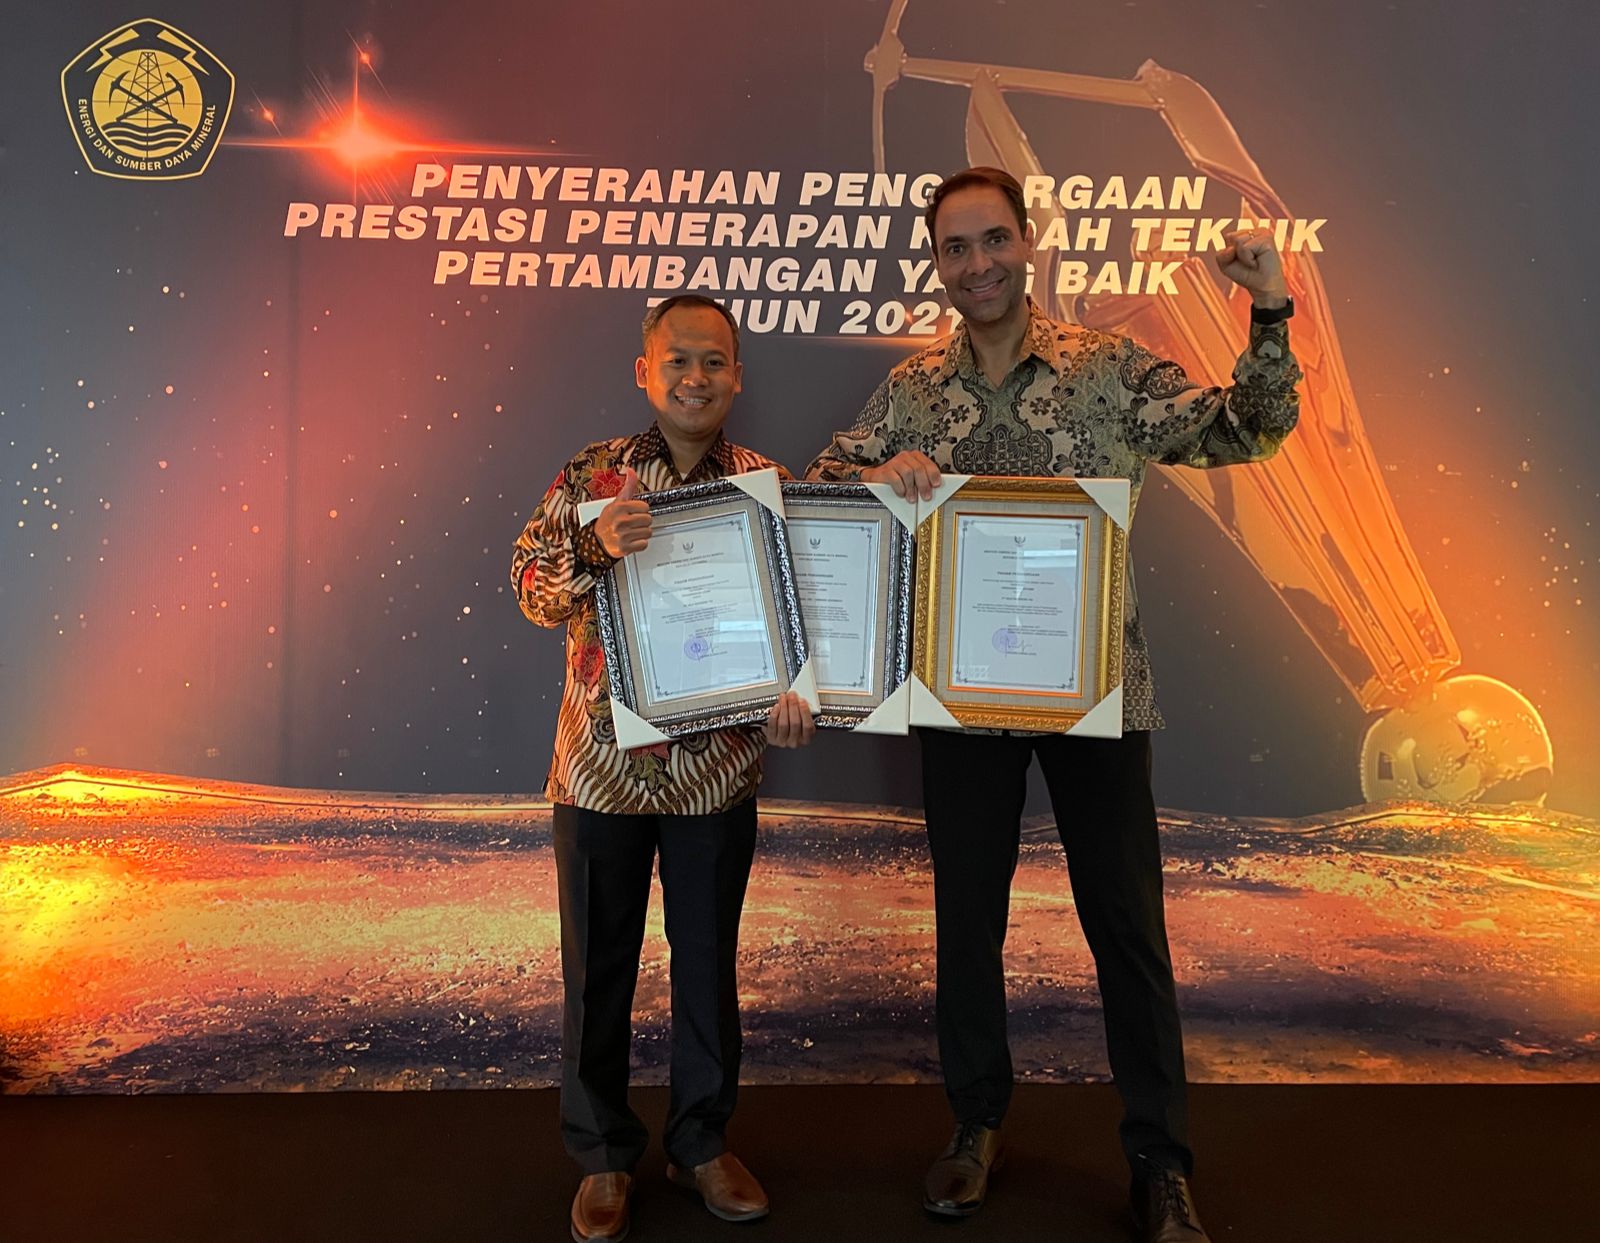 Vale Indonesia Raih Penghargaan Good Mining Practice